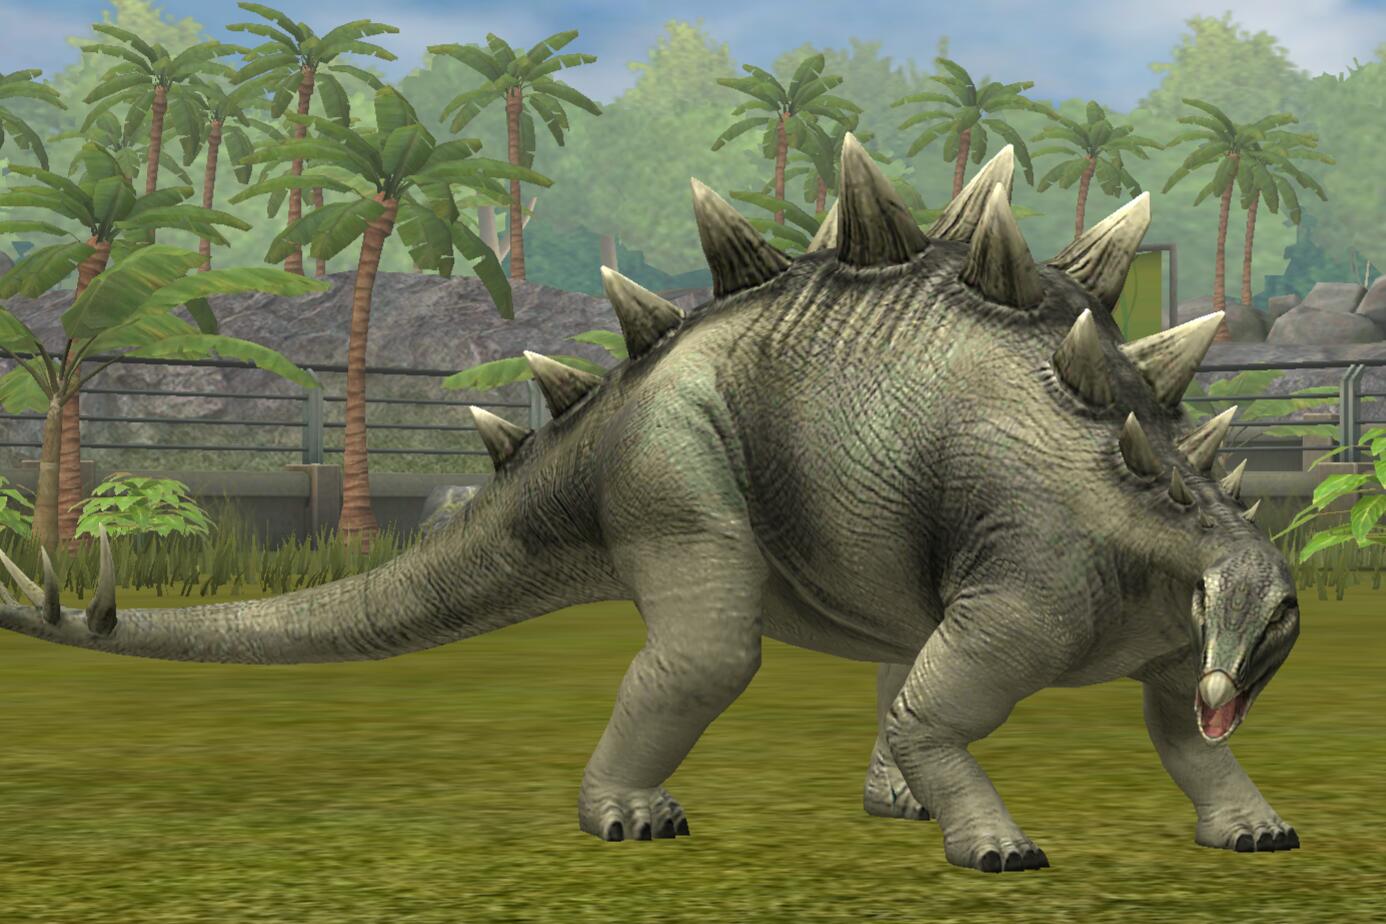 Tuojiangosaurusjw Tg Jurassic Park Wiki Fandom